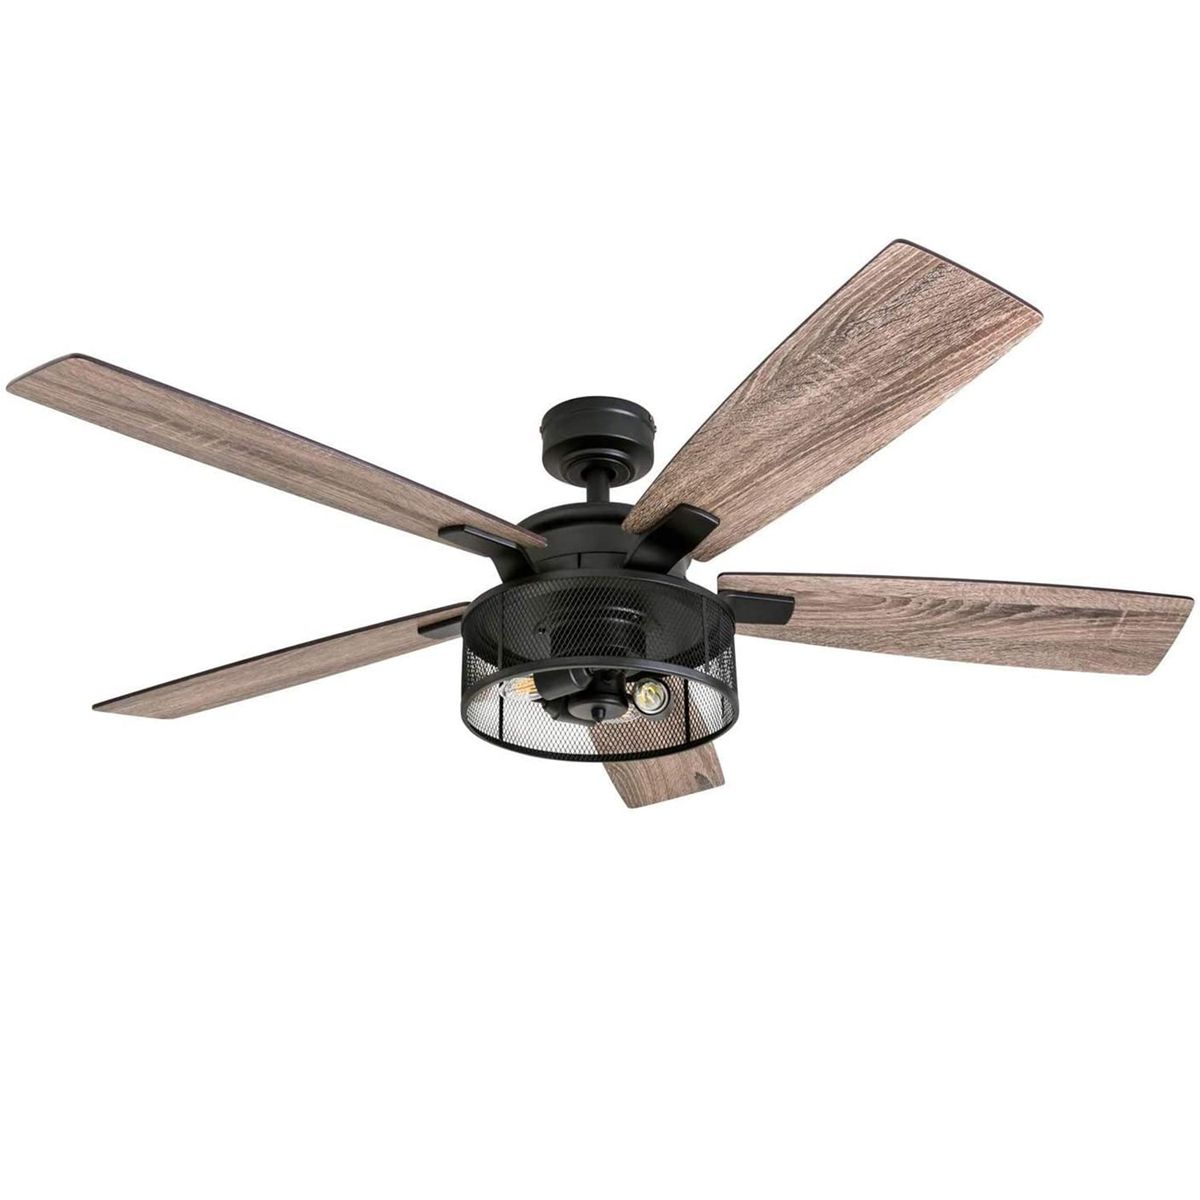 Honeywell ceiling fan